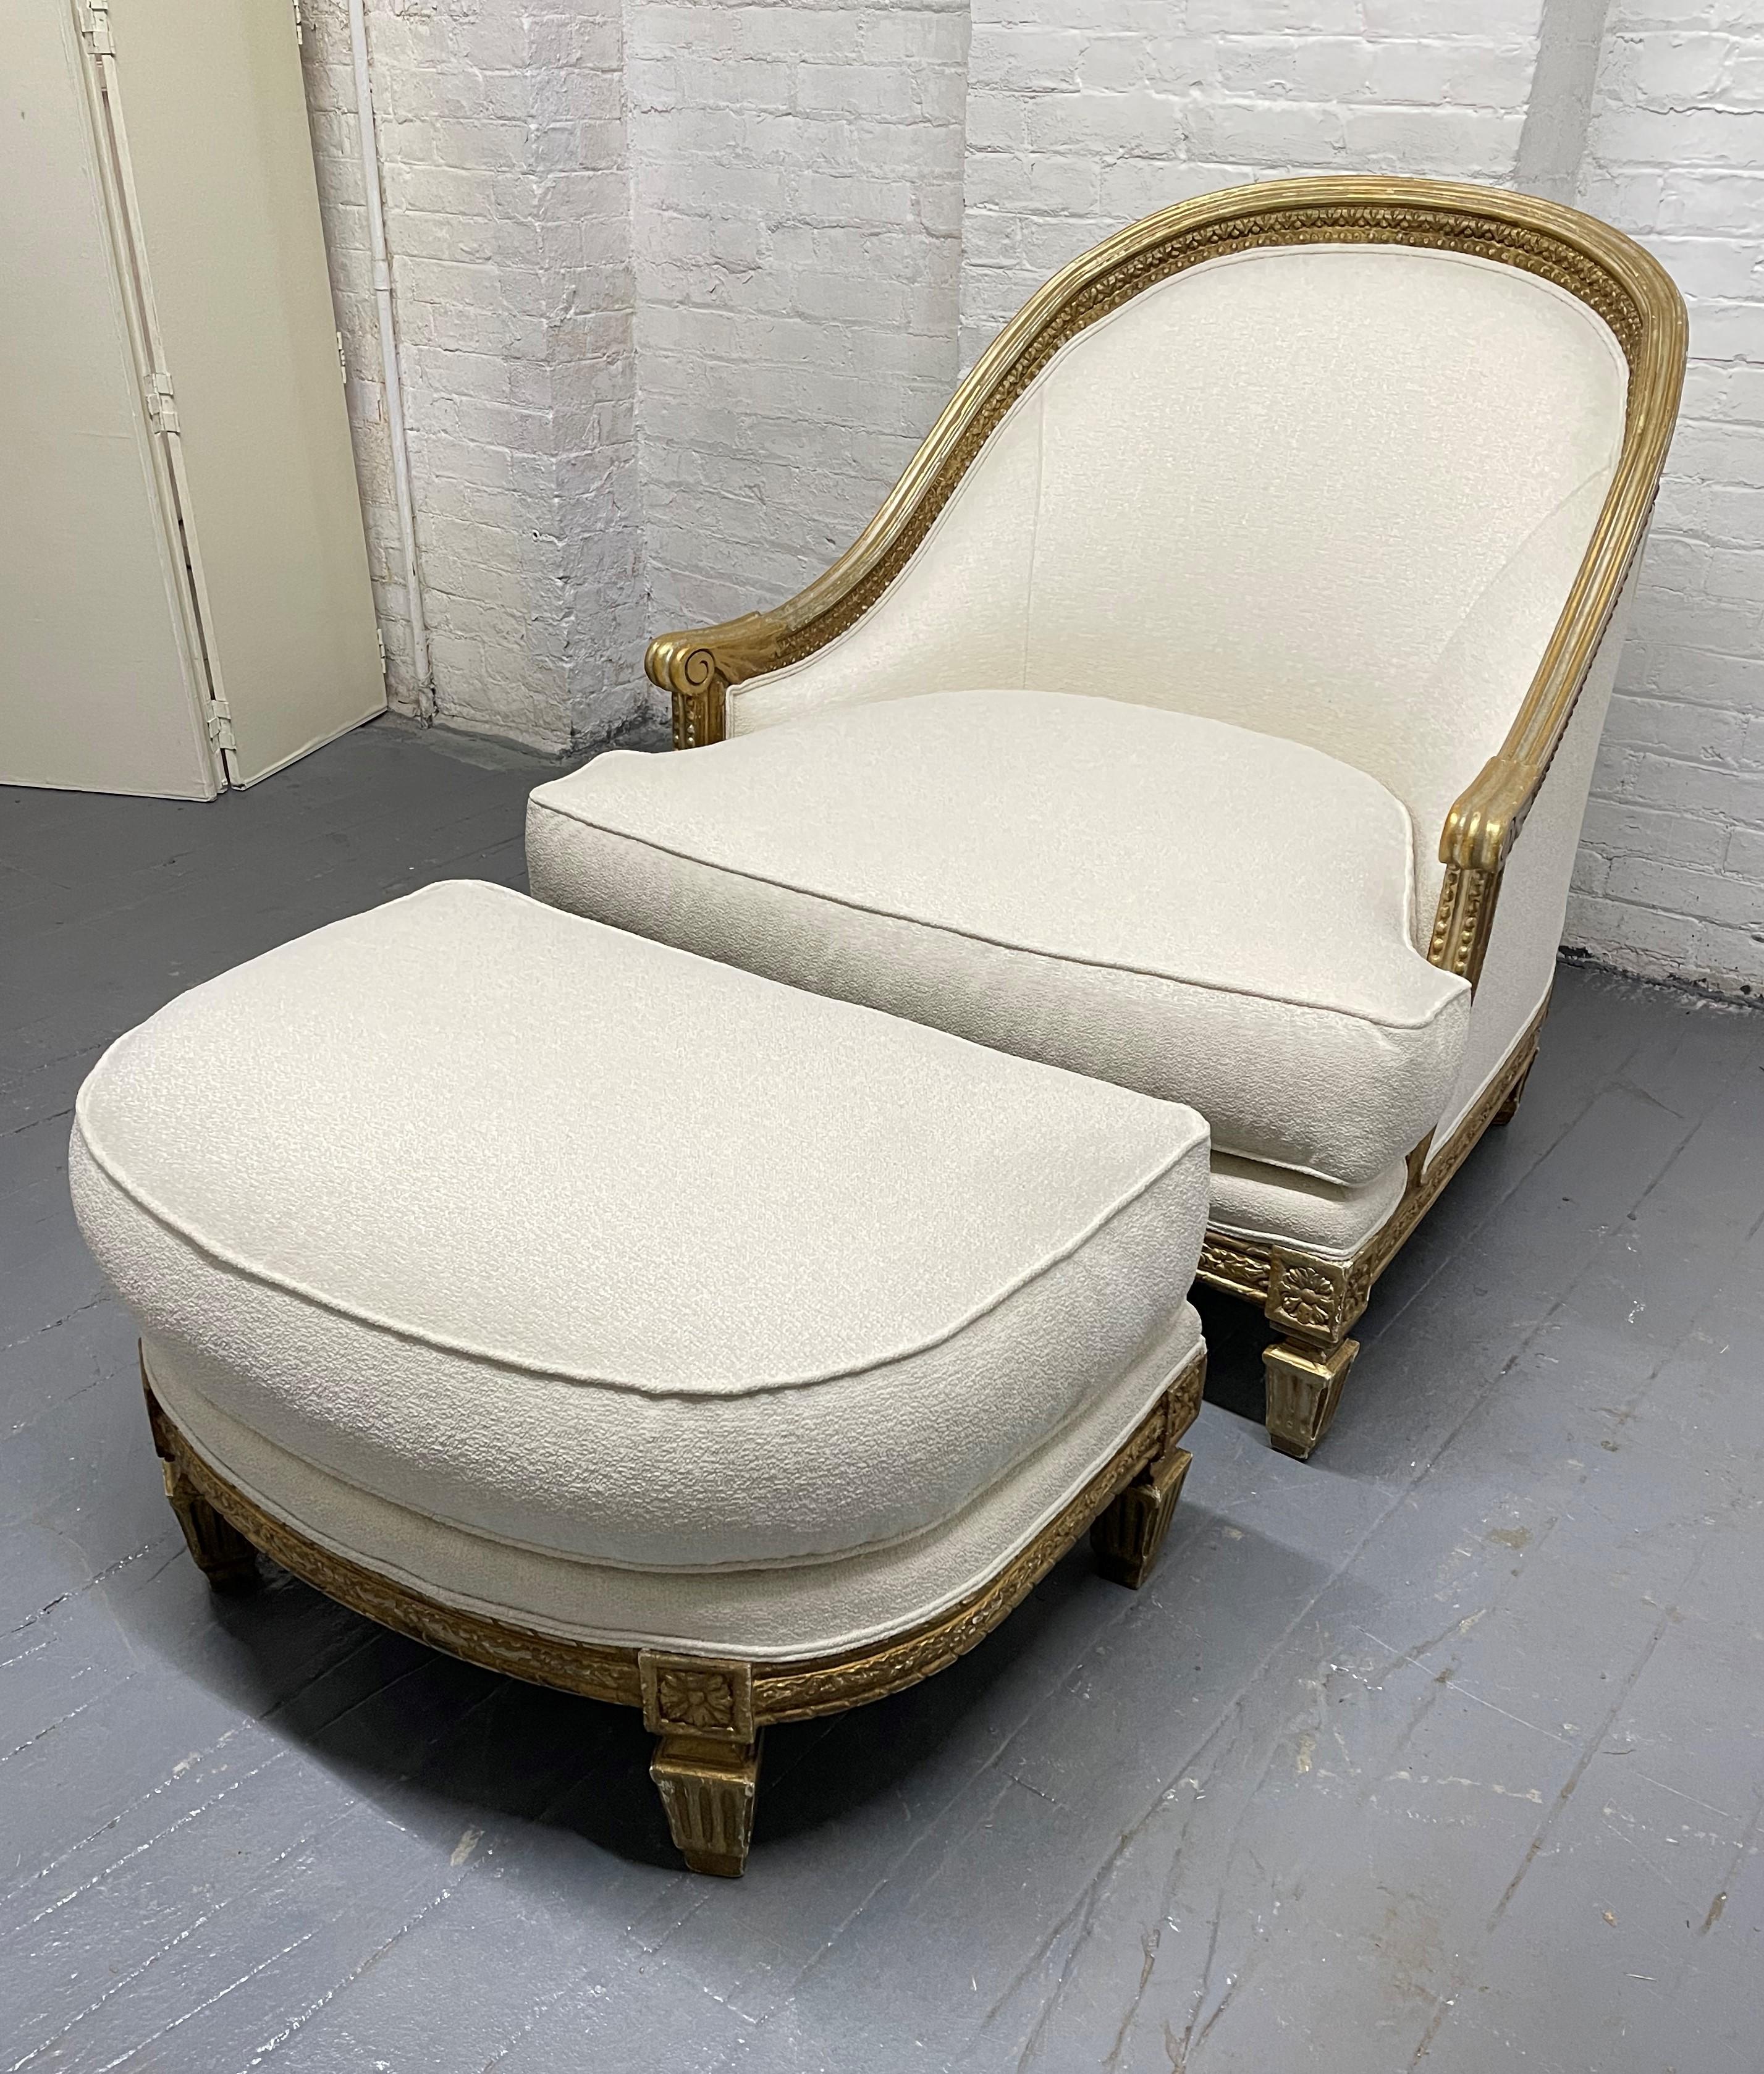 Chaise longue et ottomane Ralph Lauren de style ancien. Le cadre de la chaise et de l'ottoman est en bois doré. La chaise et l'ottoman sont nouvellement tapissés.
Mesures (chaise) : 37 H x 36 L x 36 P. Hauteur du siège : 18 cm.
Ottoman : 30,25 L x